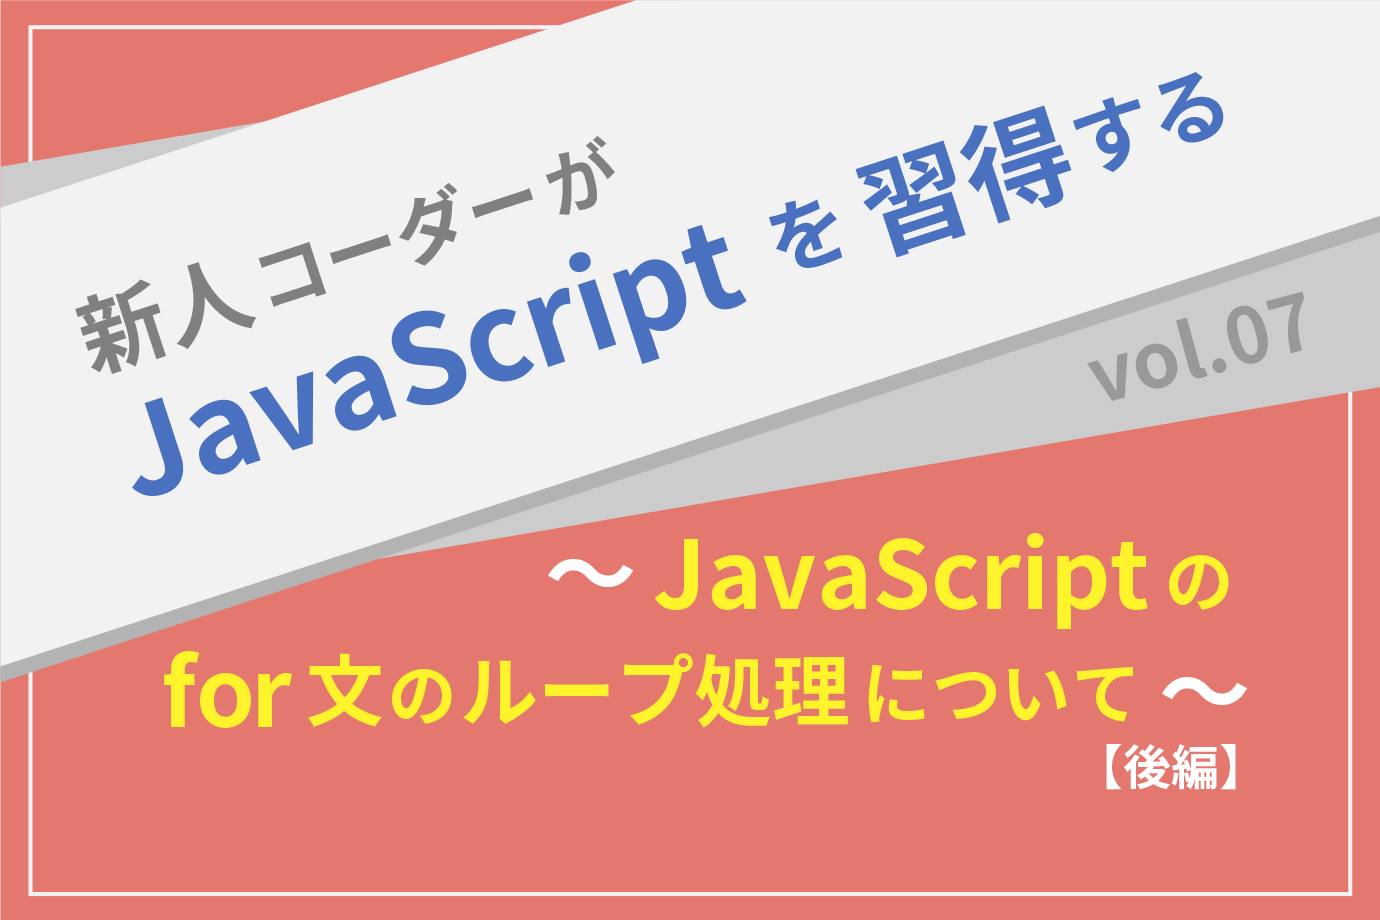 【新人コーダーがJavaScriptを習得する】vol.07 〜JavaScriptのfor文のループ処理について〜 【後編】